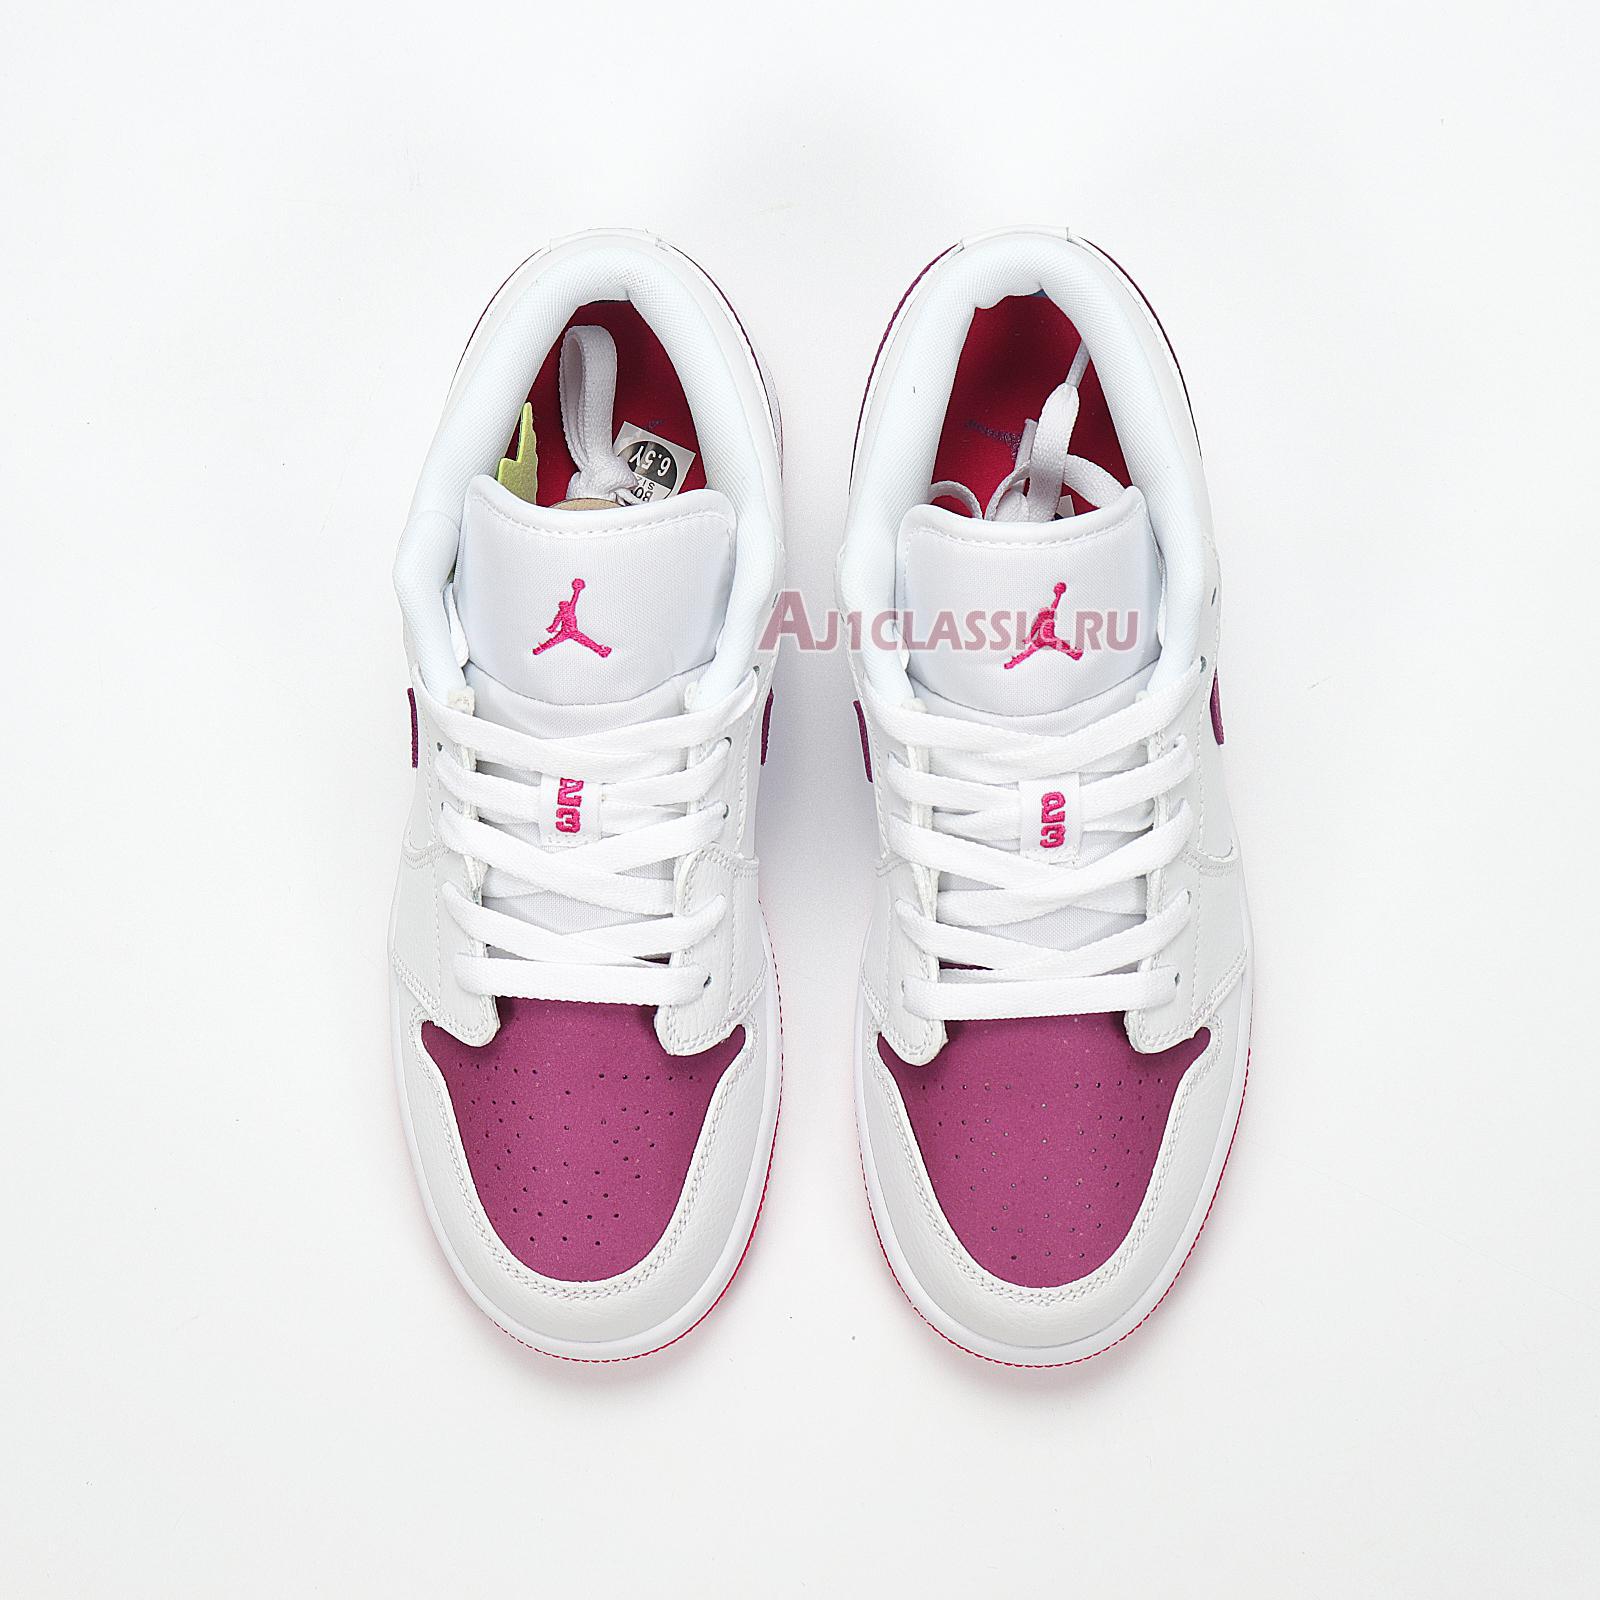 Air Jordan 1 Low "White Berry" 554723-161